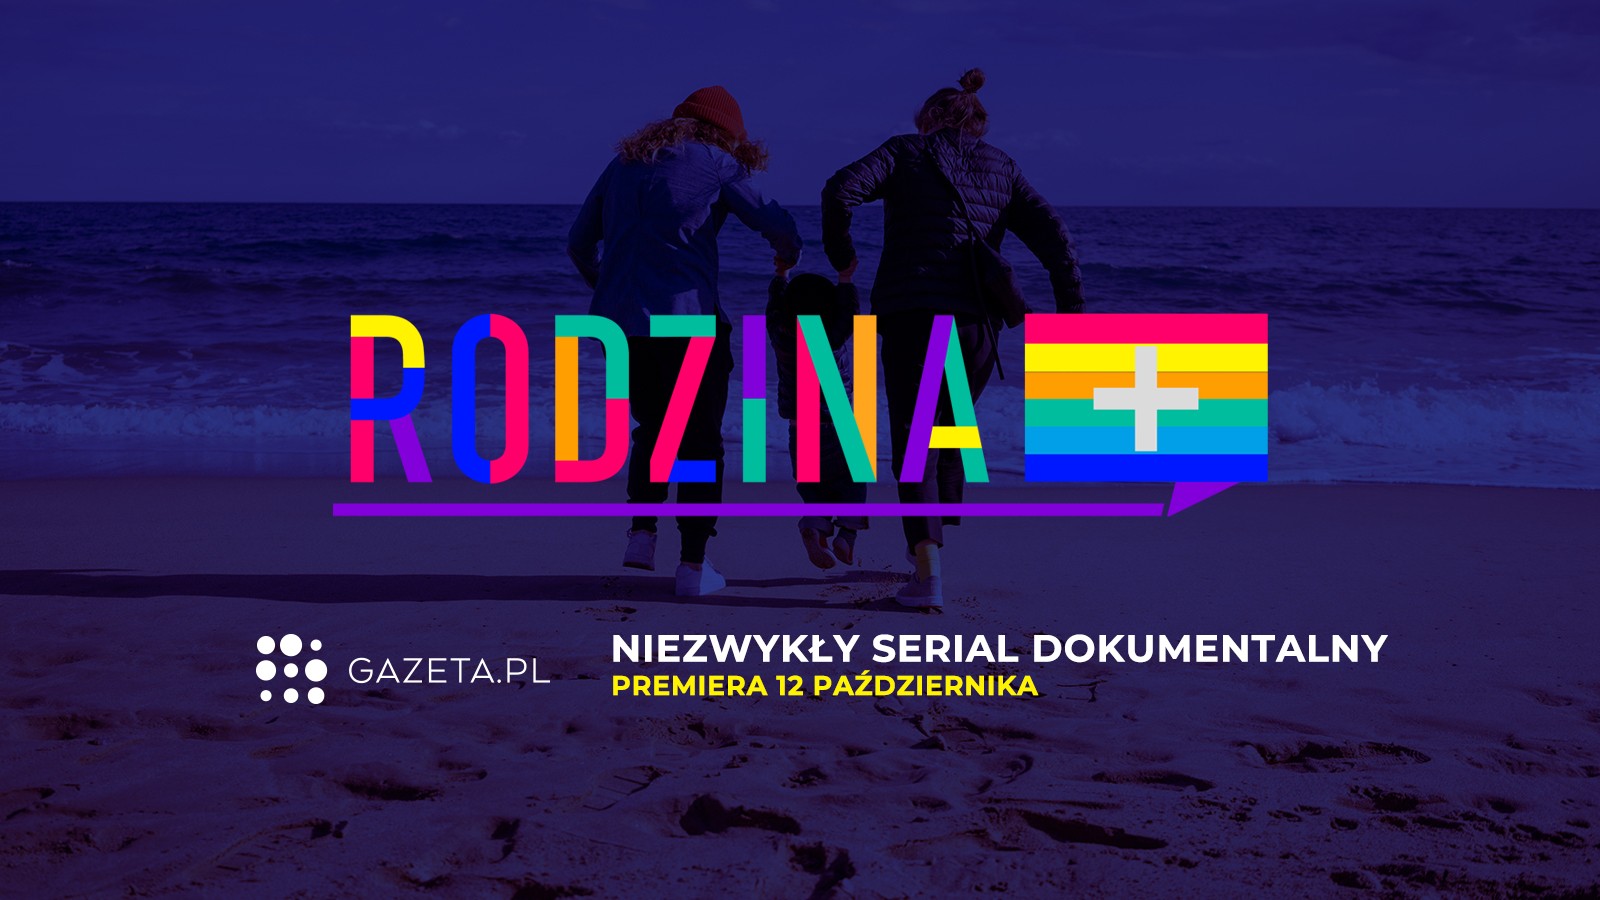 „Rodzina+” - serial dokumentalny Gazeta.pl o polskich rodzinach LGBT+